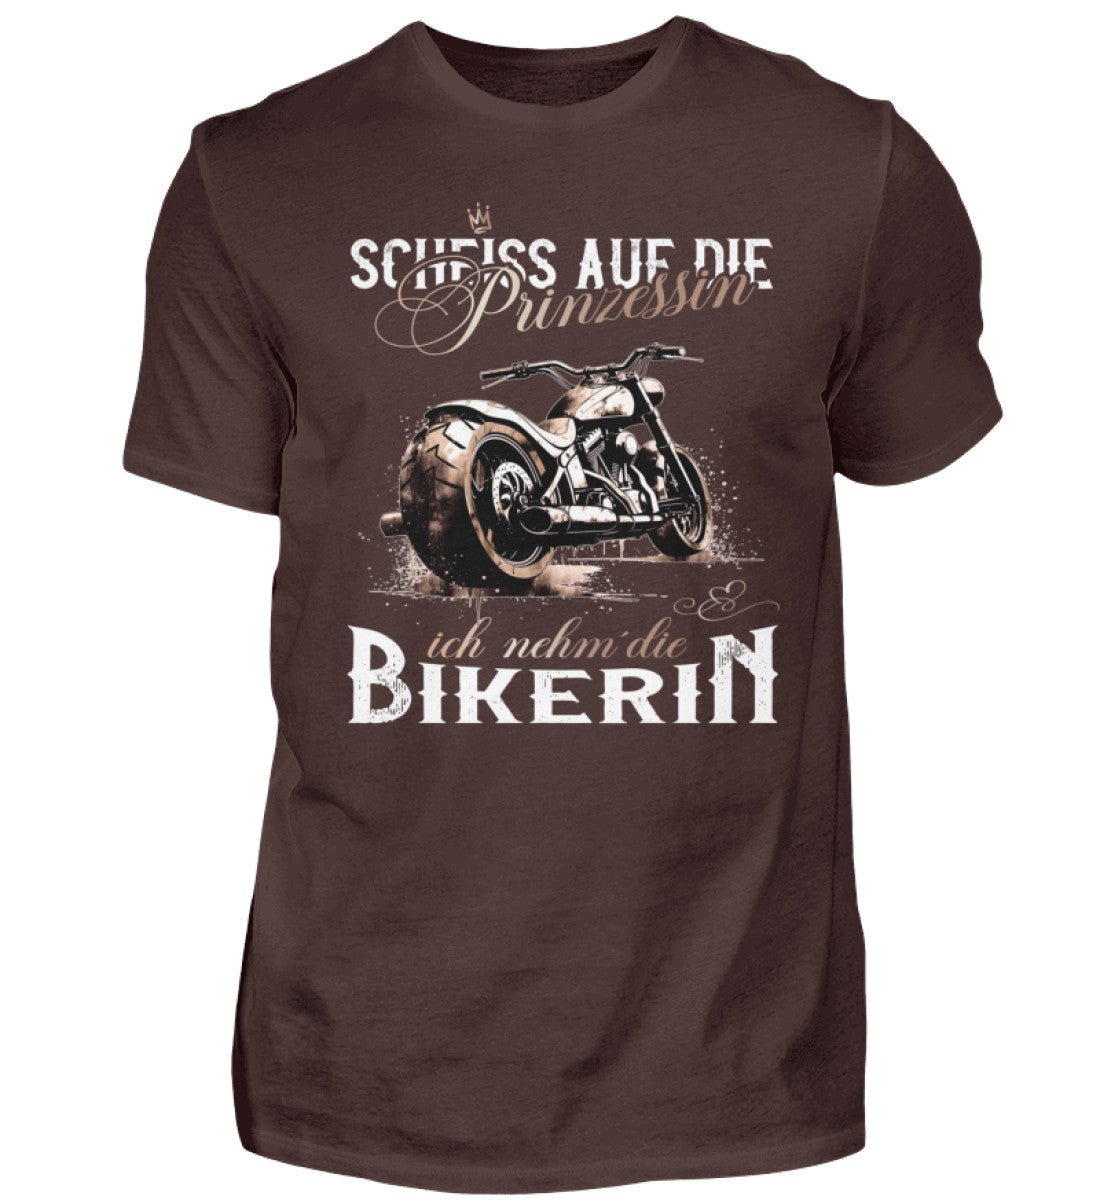 Ein Biker T-Shirt für Motorradfahrer von Wingbikers mit dem Aufdruck, Scheiß auf die Prinzessin - Ich nehm´ die Bikerin - in braun.